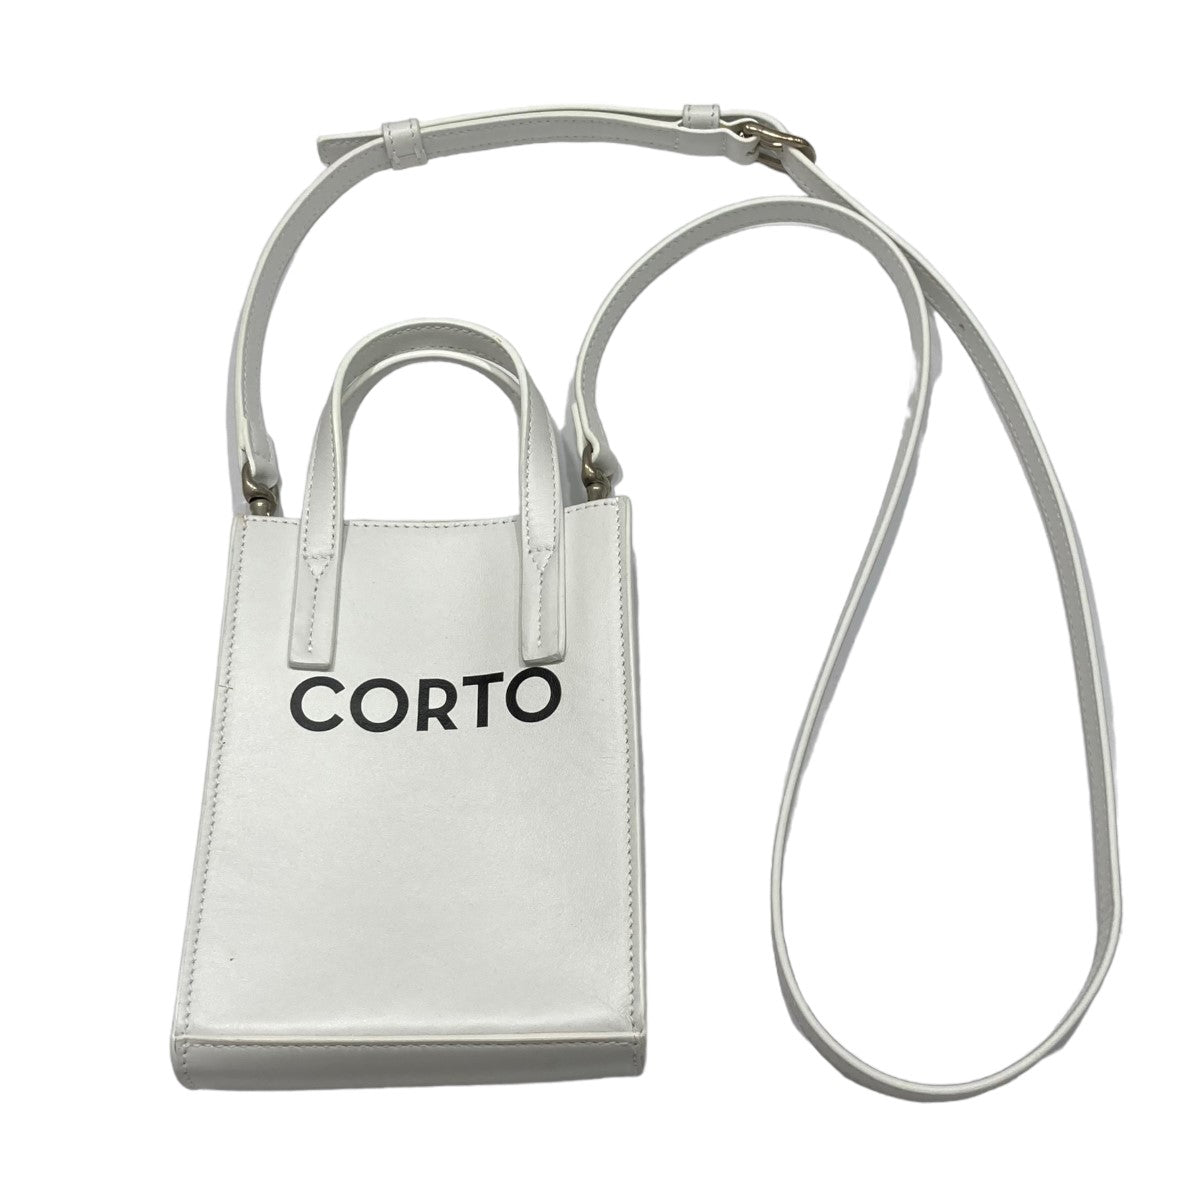 Corto Moltedo(コルトモルテド) ×WIND AND SEA ロゴショルダーバッグ 